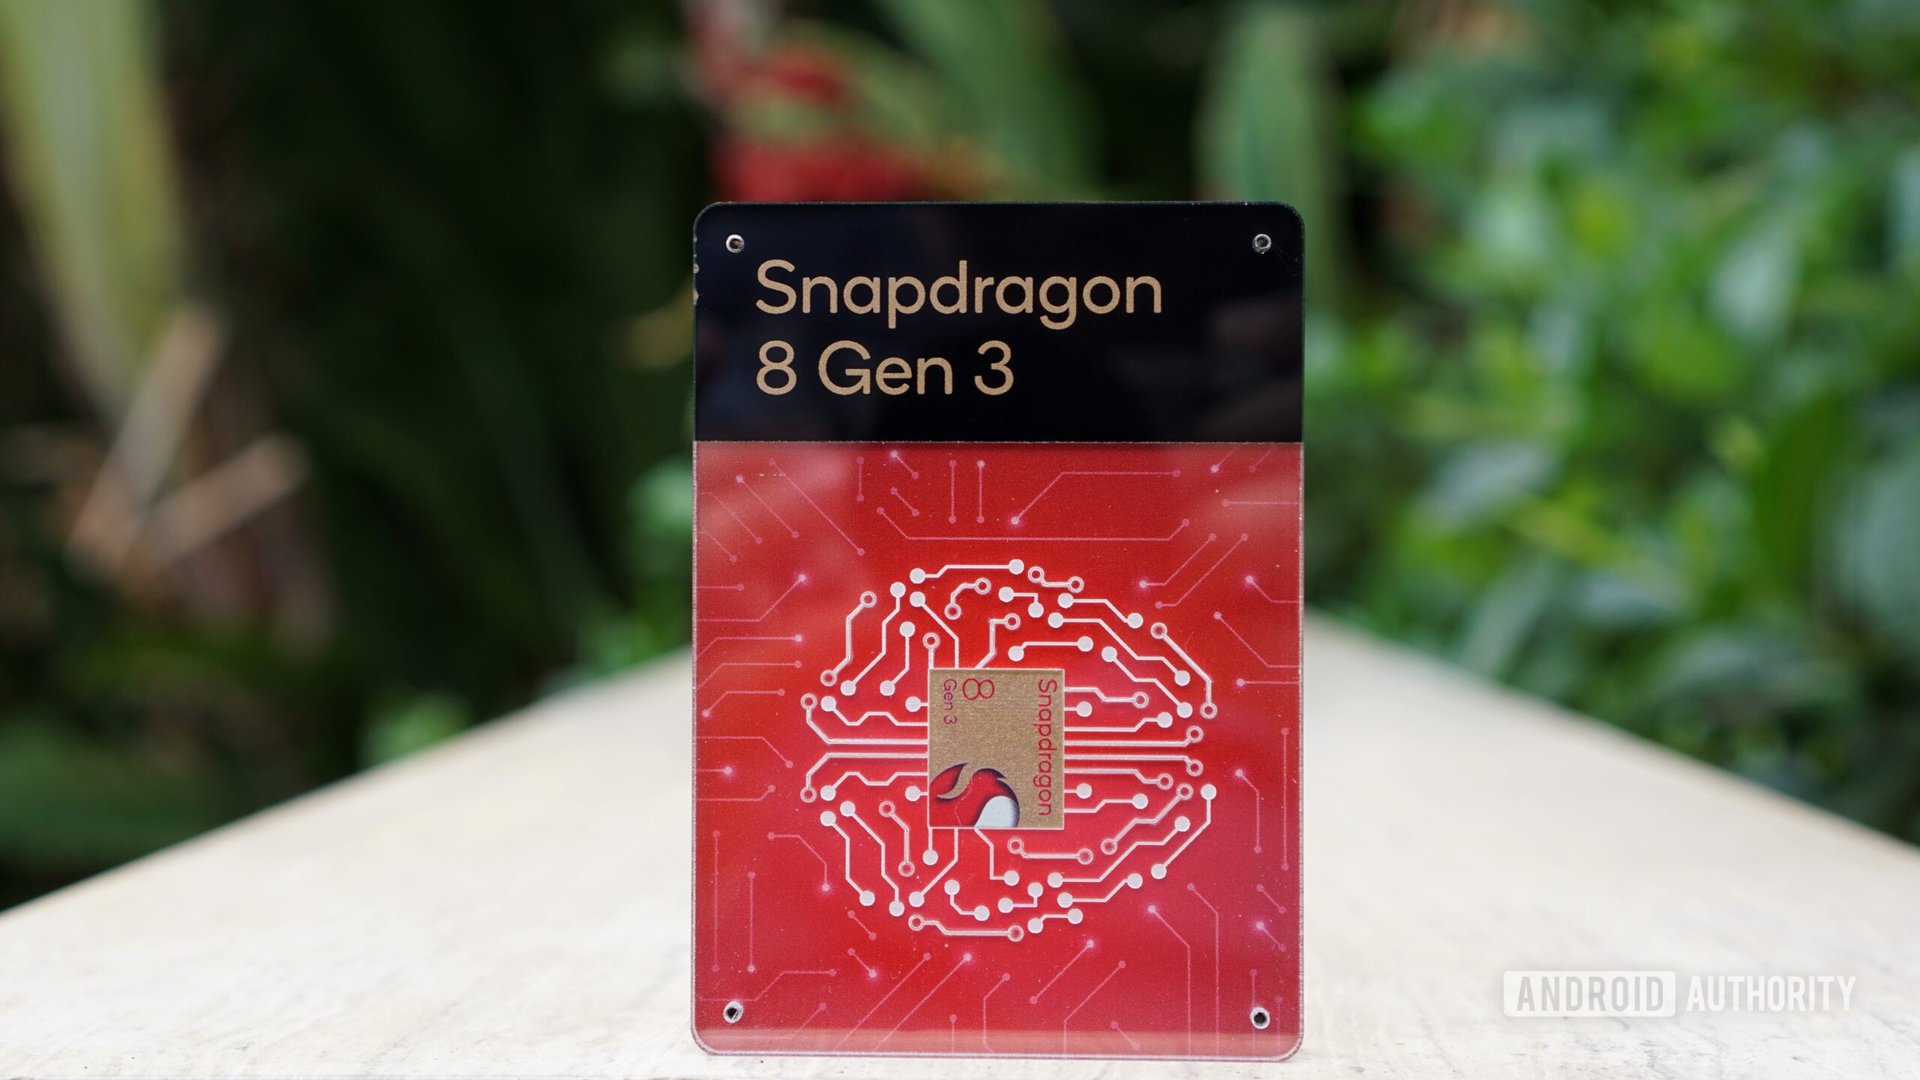 Qualcomm Snapdragon 8s Gen 3 leaks: A chip for affordable flagships?